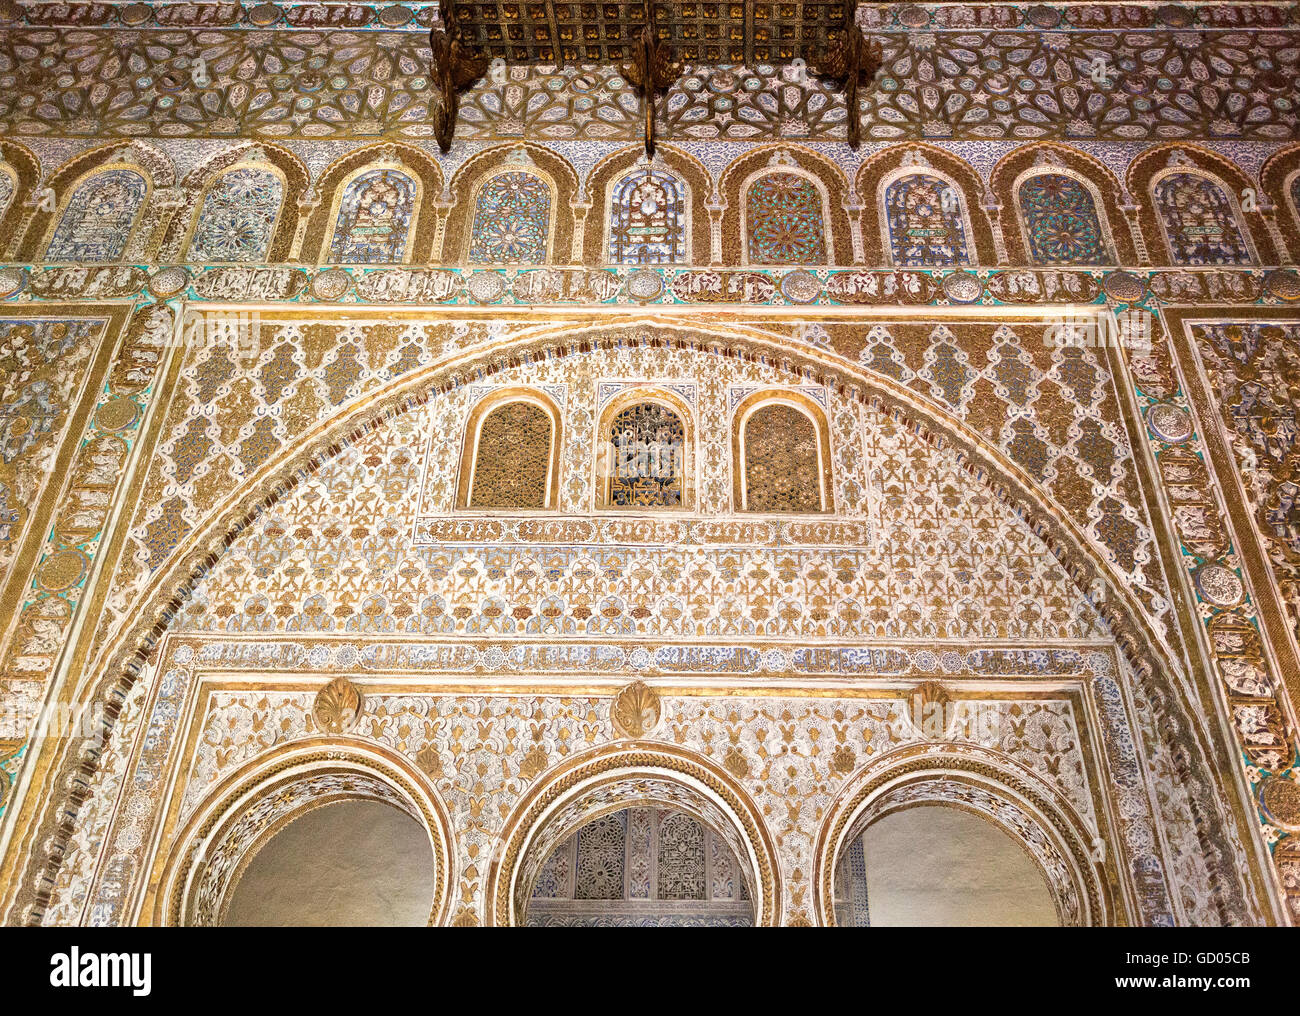 La splendeur de l'architecture civile mudéjar et art califale, Alcazar de Séville, Espagne Banque D'Images